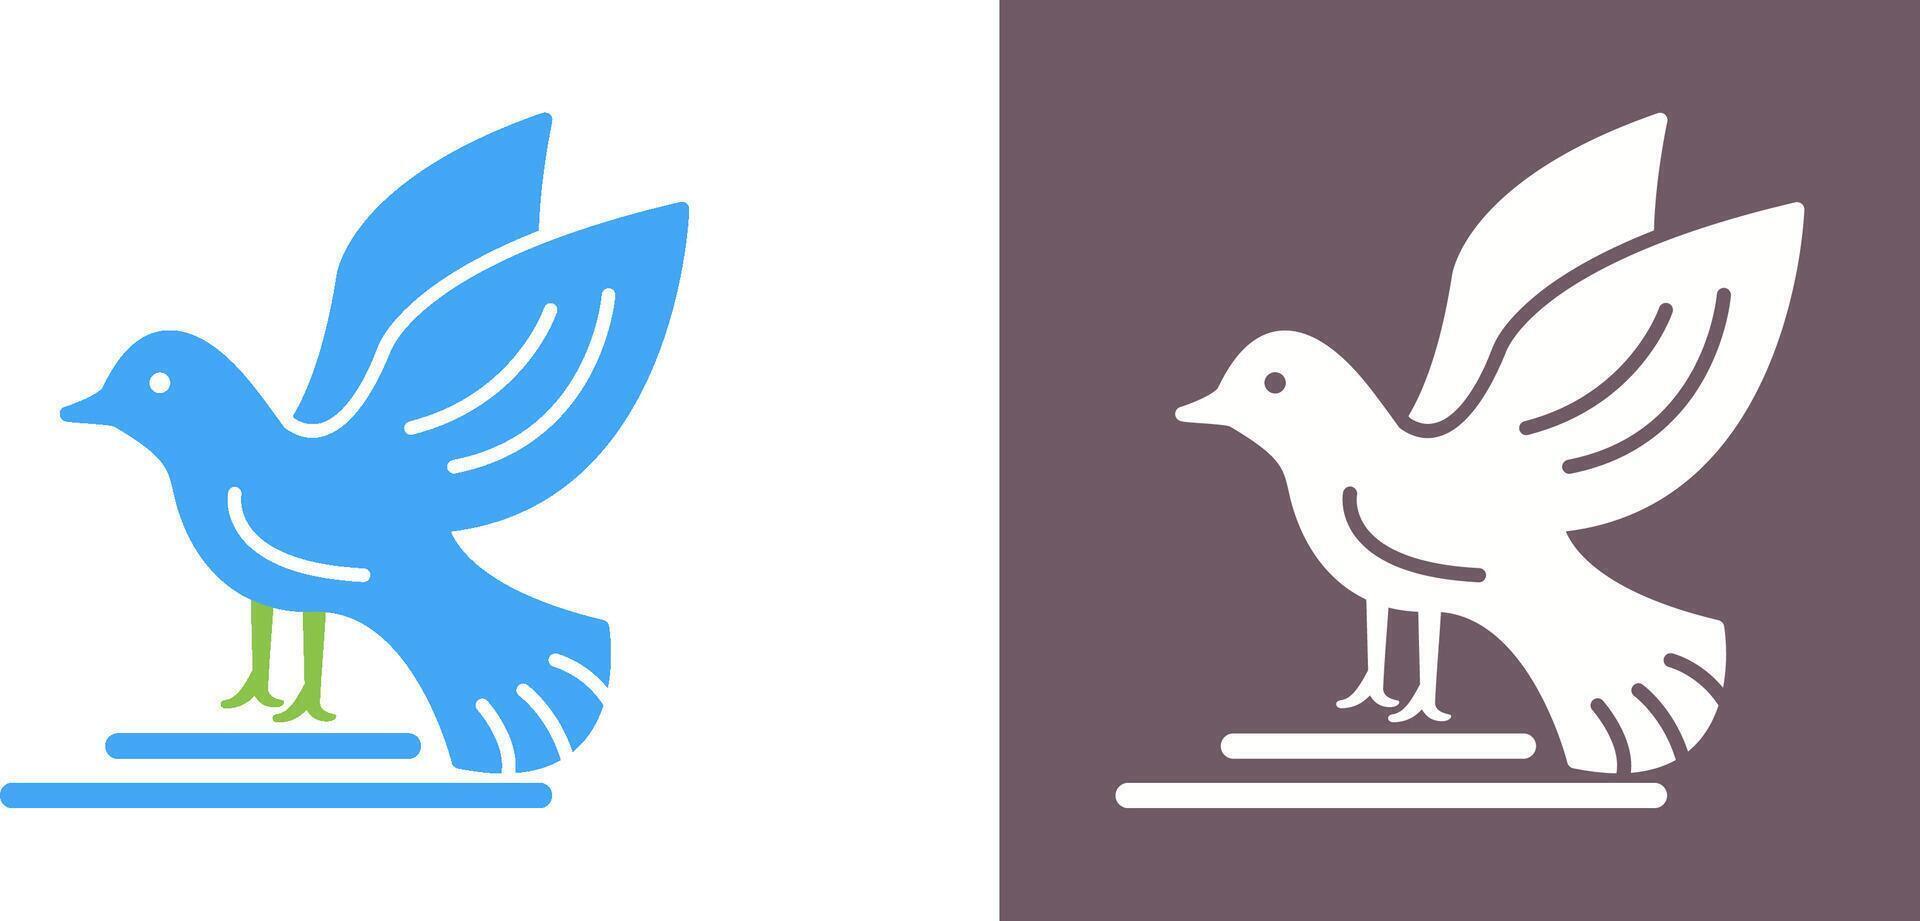 conception d'icône d'oiseau vecteur